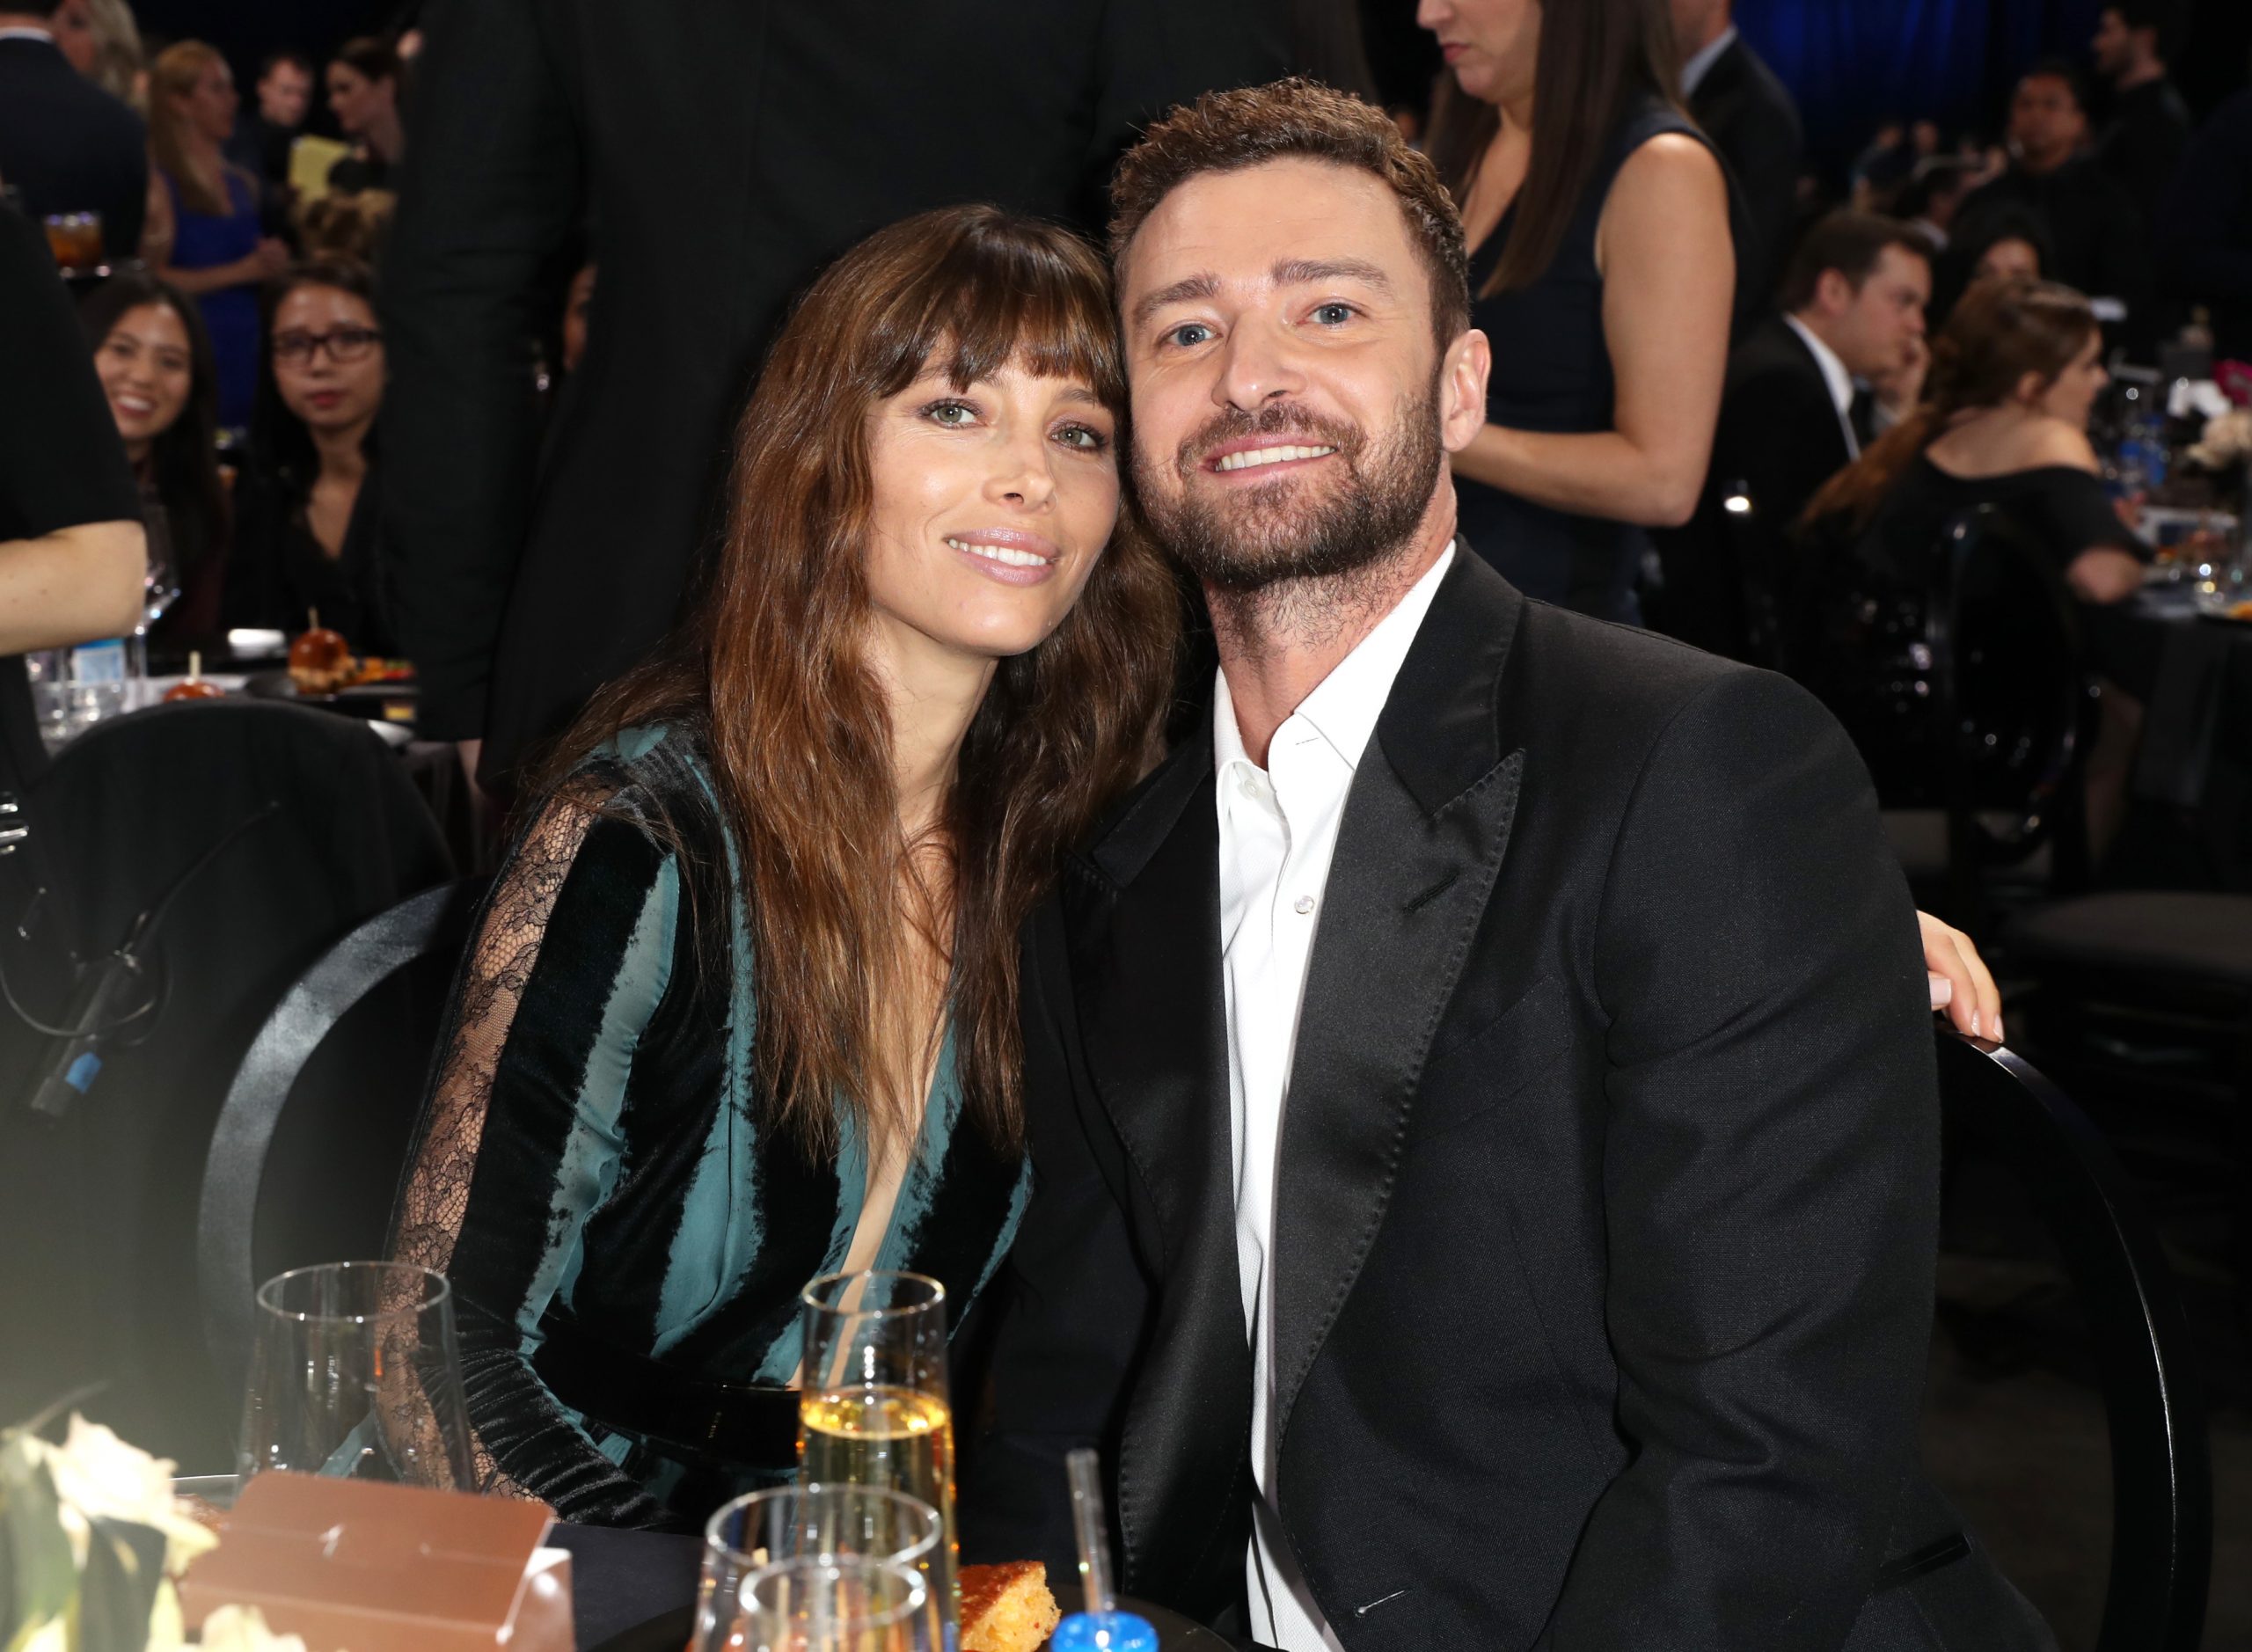 Ce reacție a avut Jessica Biel, soția lui Justin Timberlake atunci când la văzut la brațul altei femei?